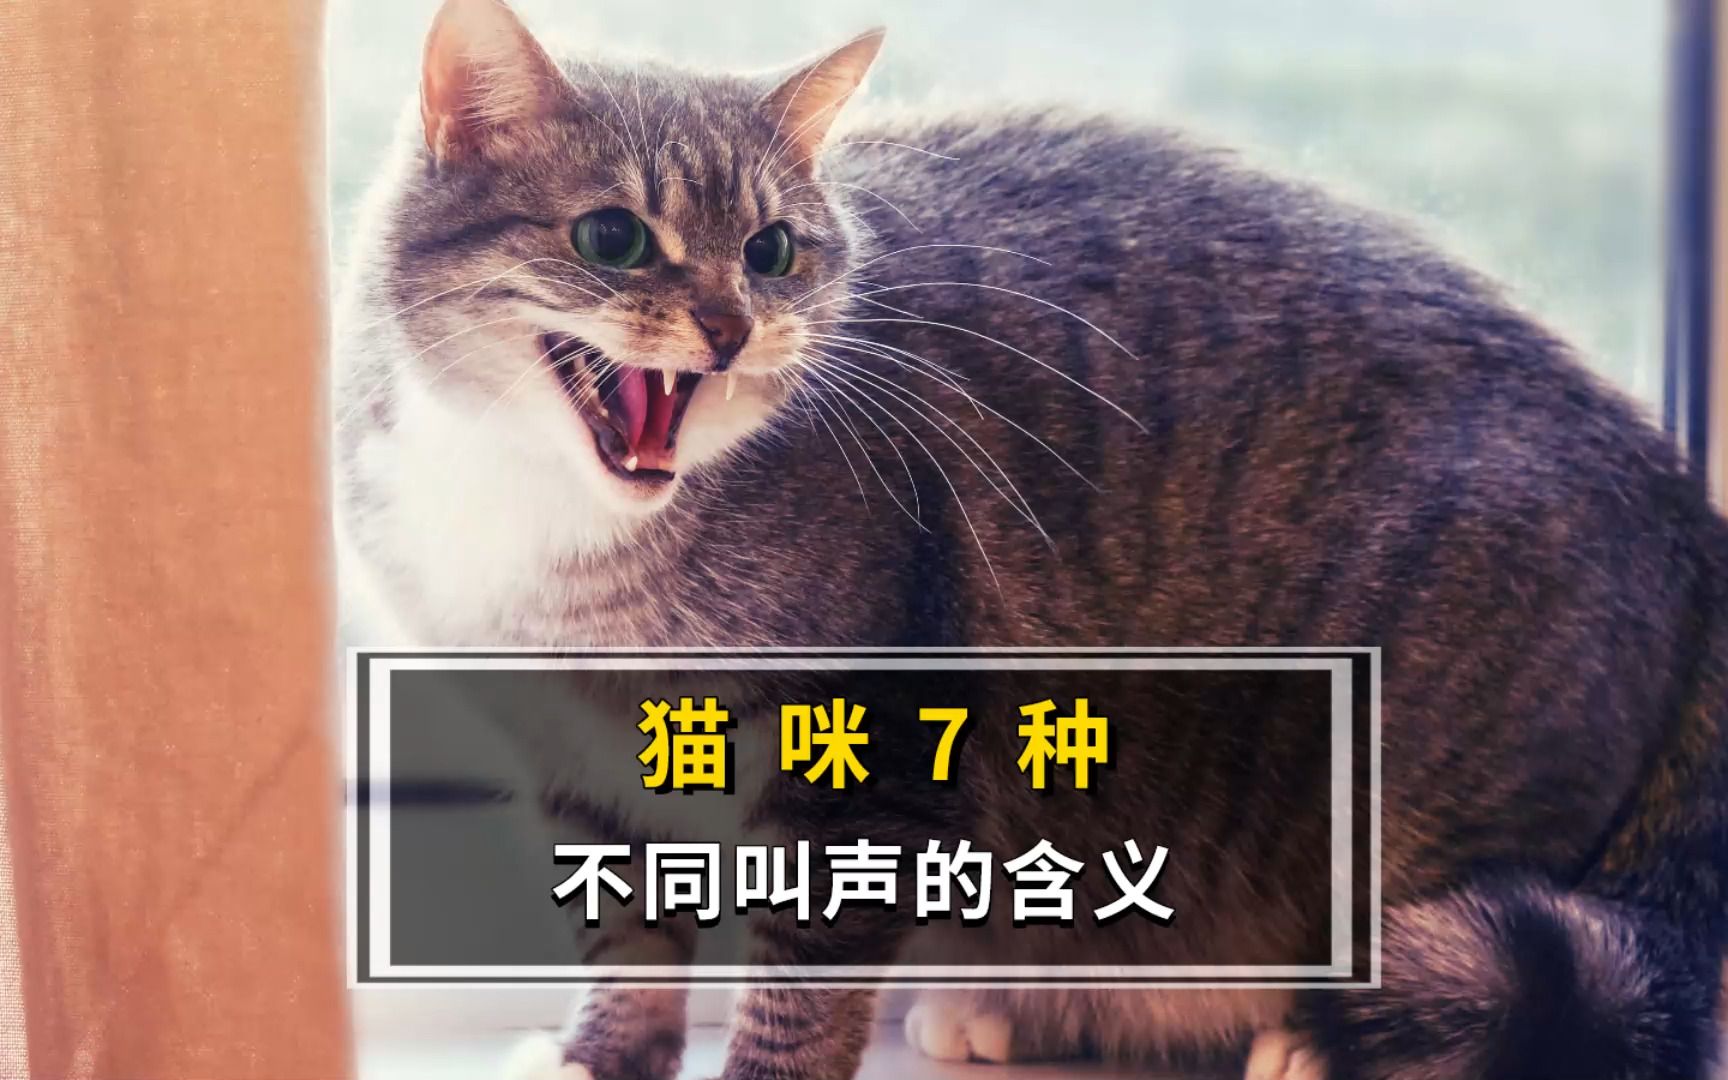 你的猫语几级呢?能听懂猫咪这些叫声吗?